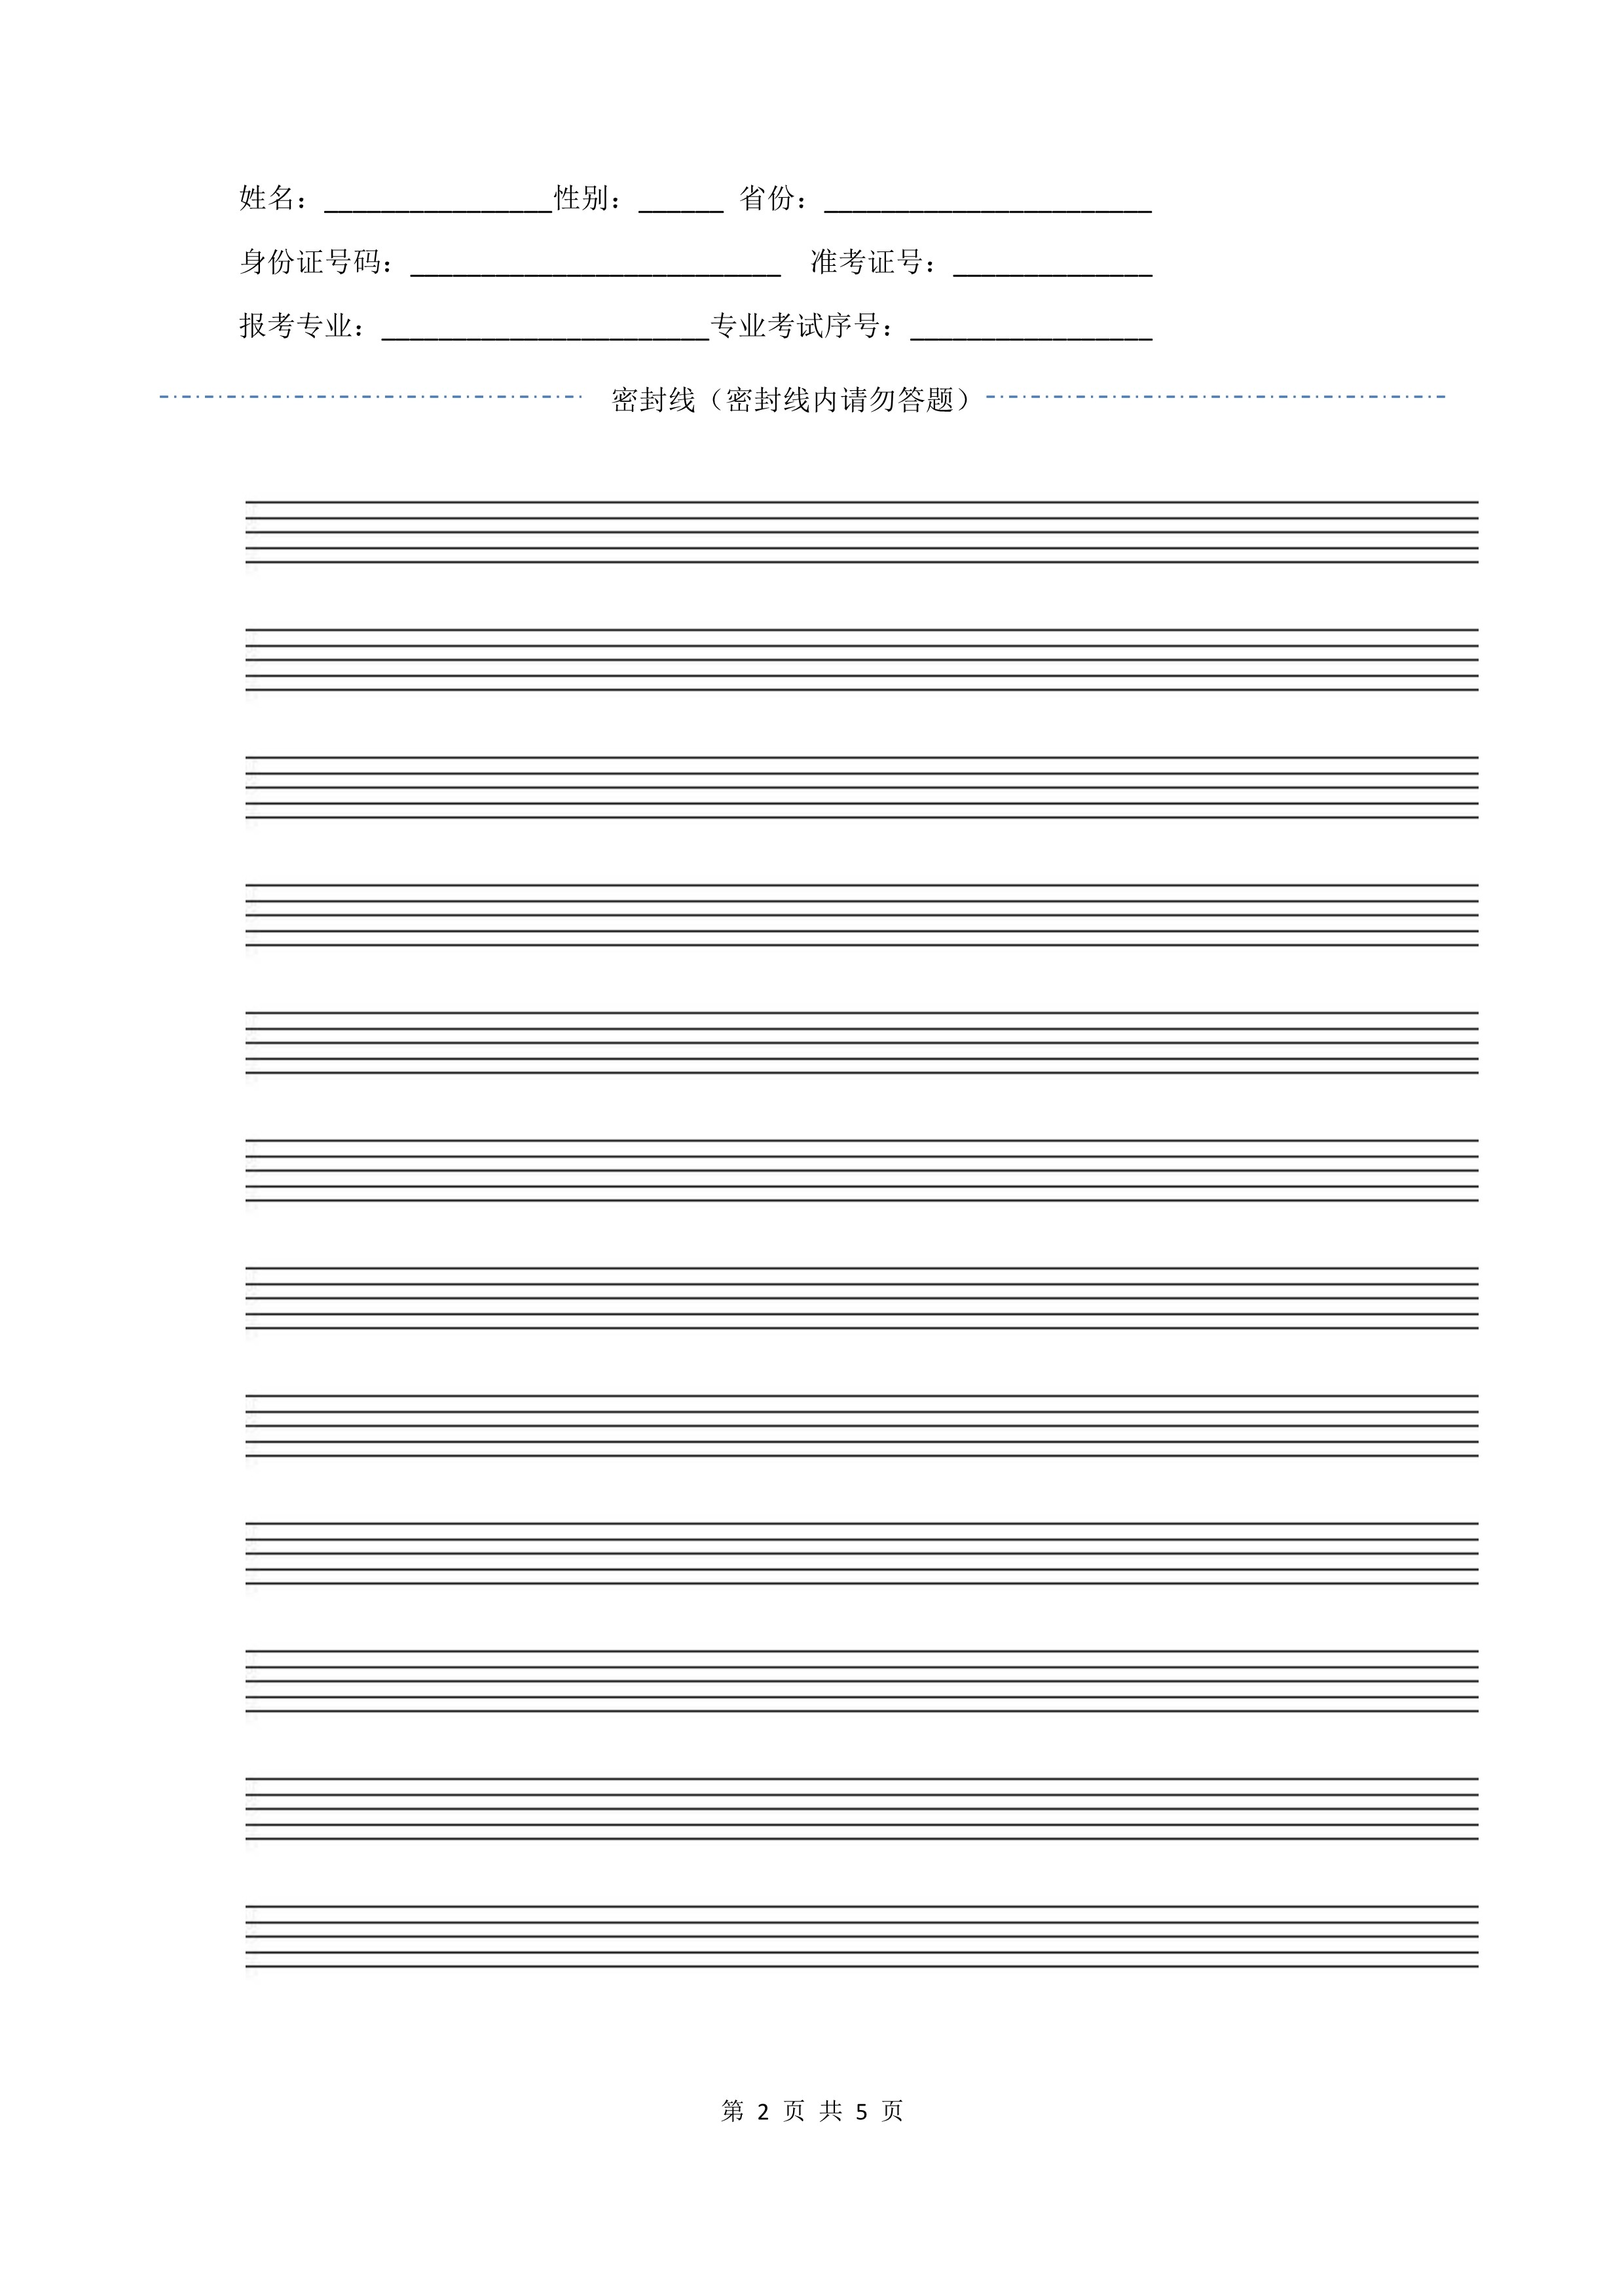 南京艺术学院2022年本科招生作曲与作曲技术理论、作曲与作曲技术理论（计算机作曲）专业《和声》科目考试答题纸及草稿纸_2 - 副本.jpg